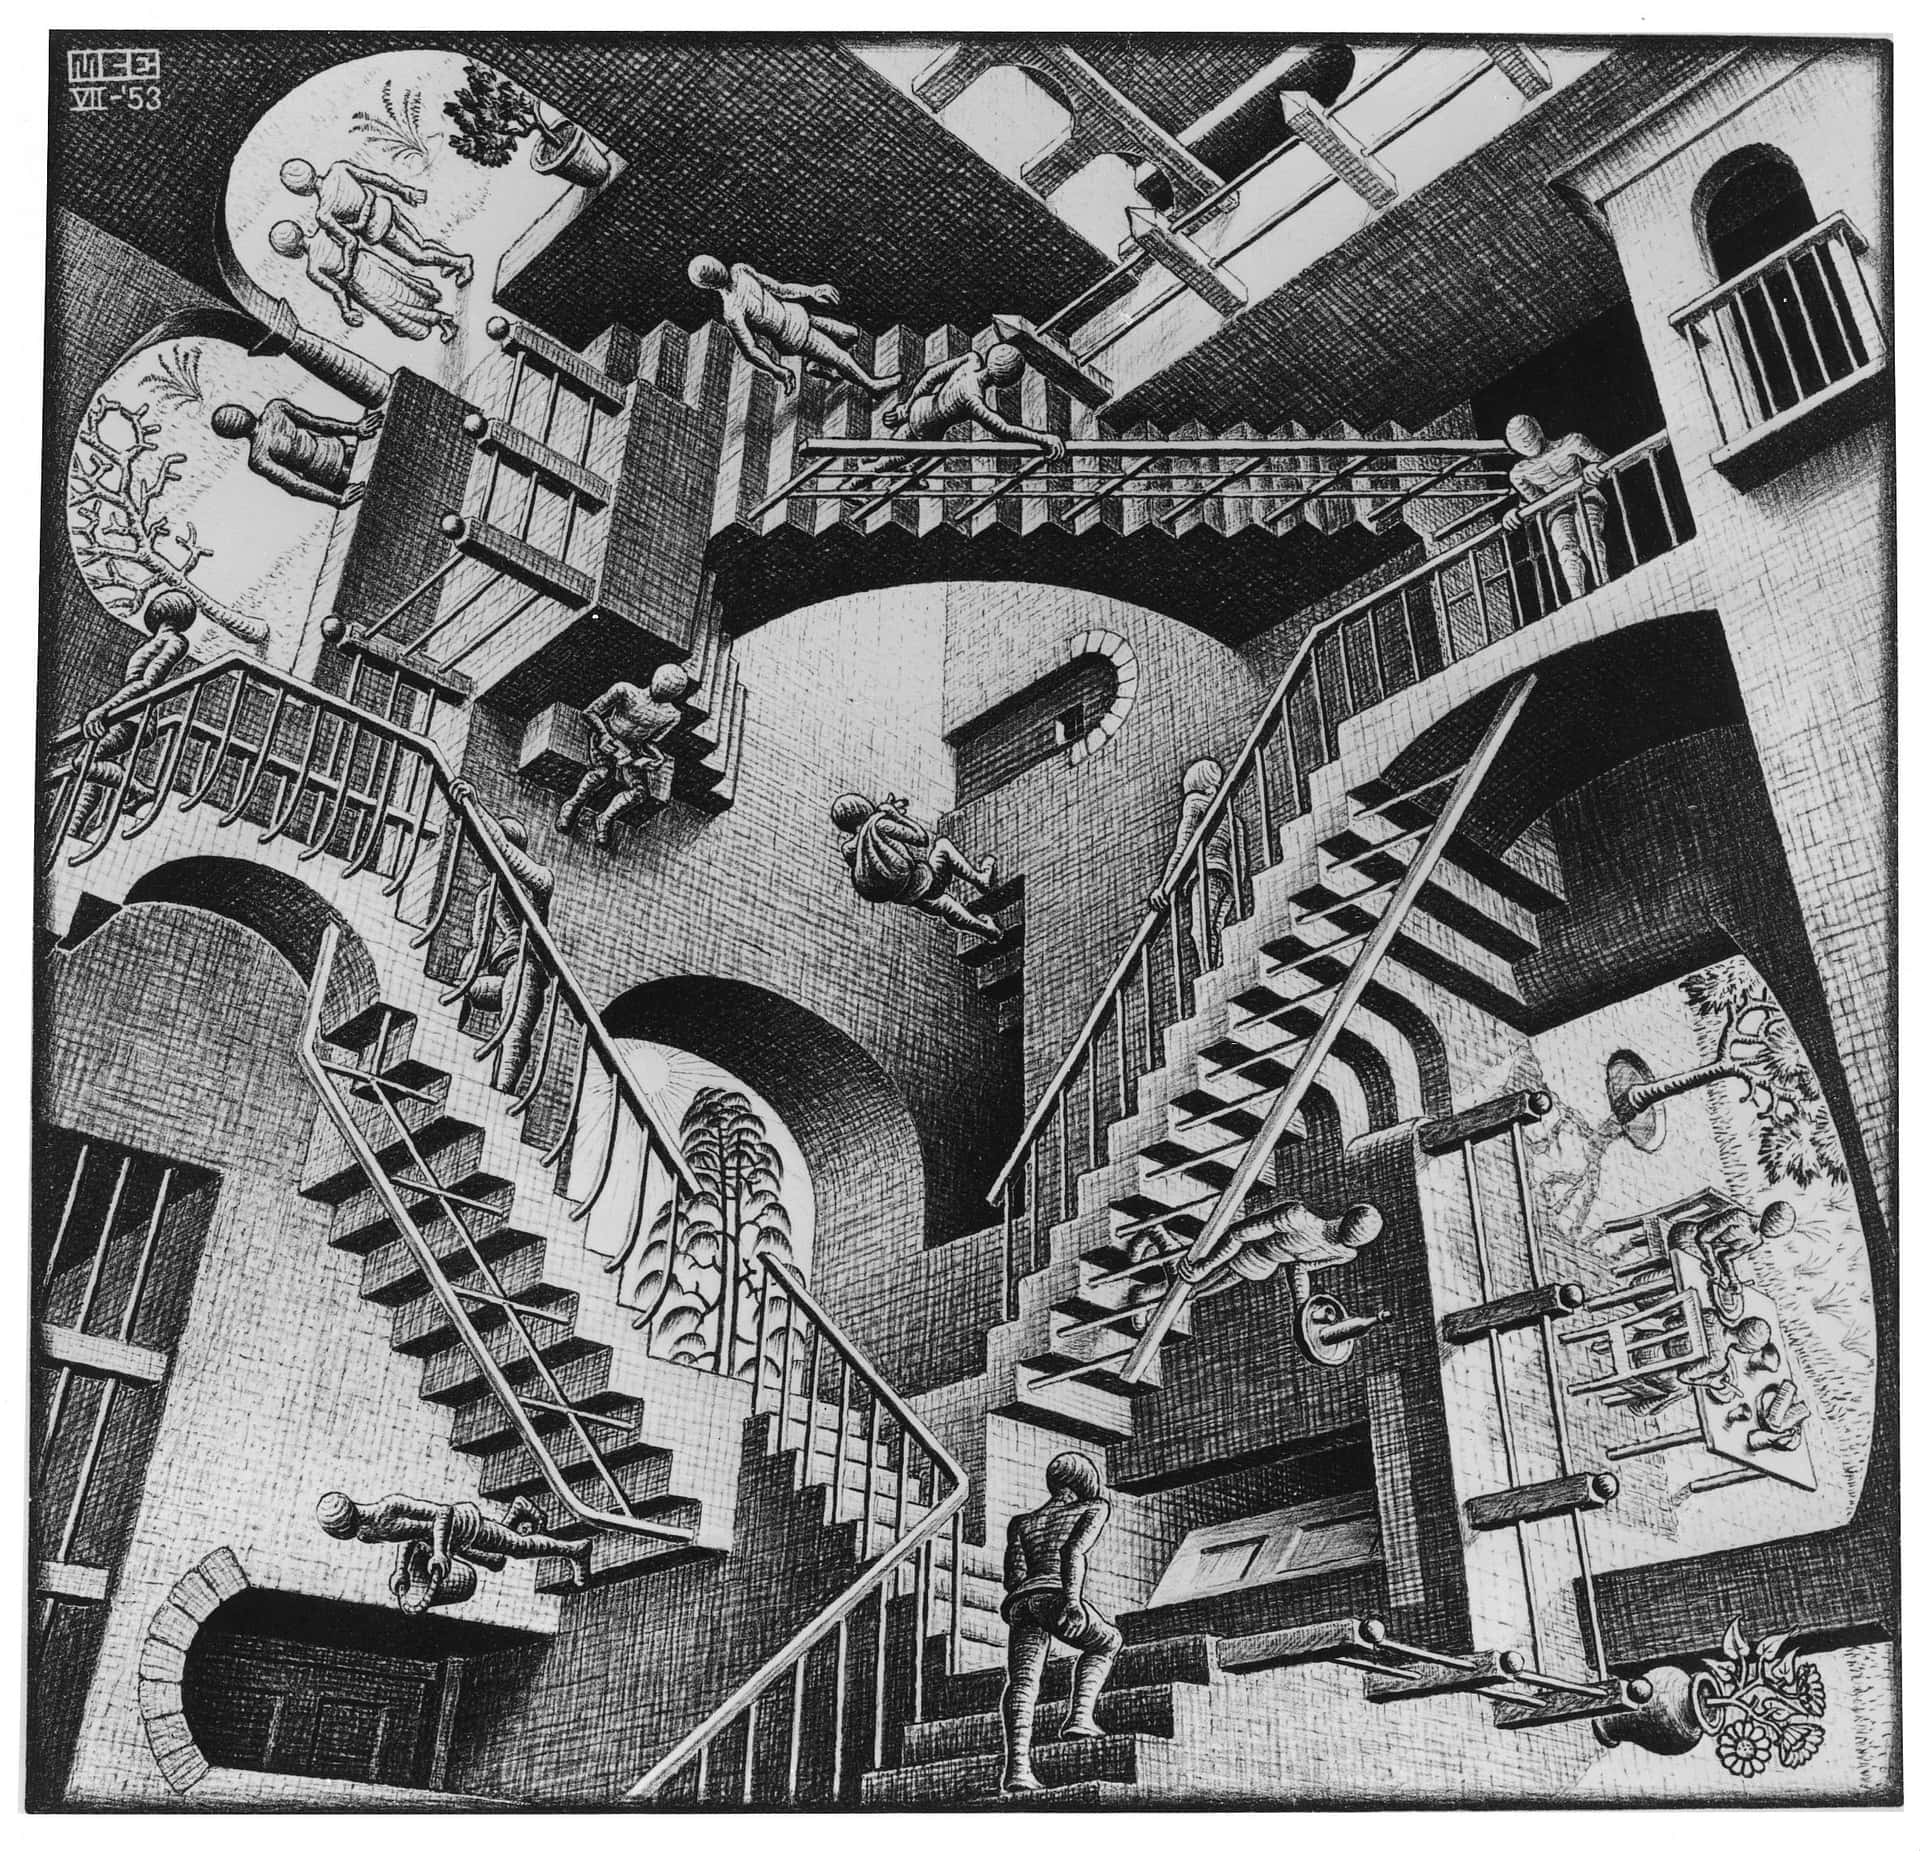 "An Escherian Coincidence" Wallpaper